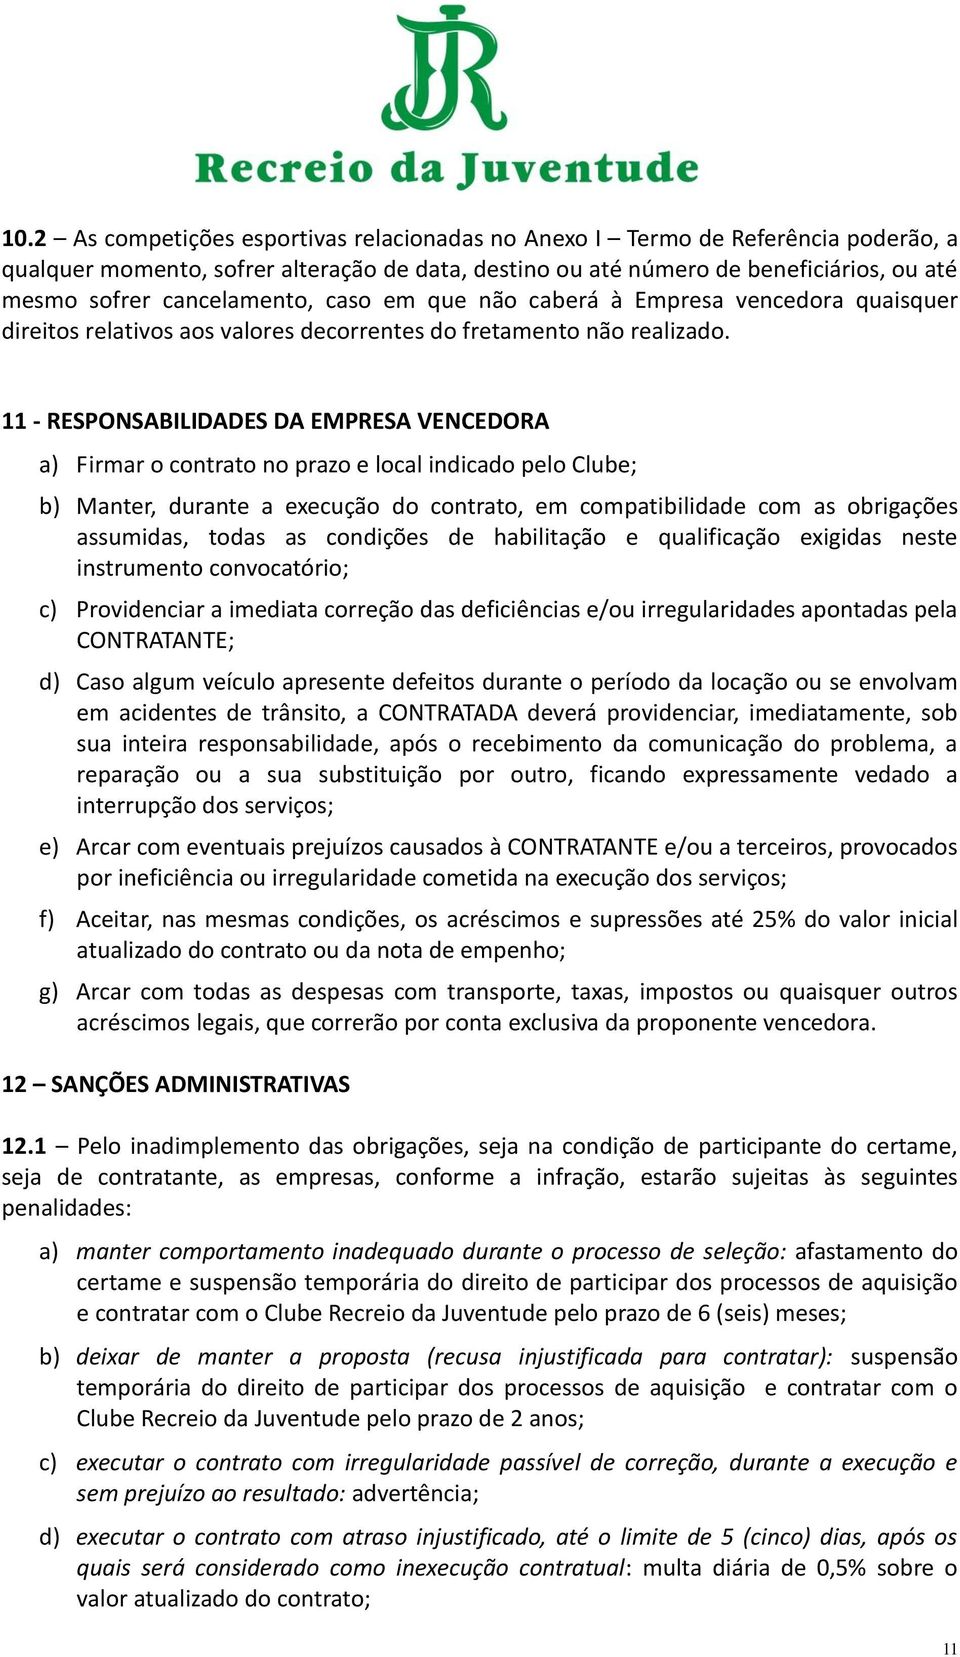 11 - RESPONSABILIDADES DA EMPRESA VENCEDORA a) Firmar o contrato no prazo e local indicado pelo Clube; b) Manter, durante a execução do contrato, em compatibilidade com as obrigações assumidas, todas